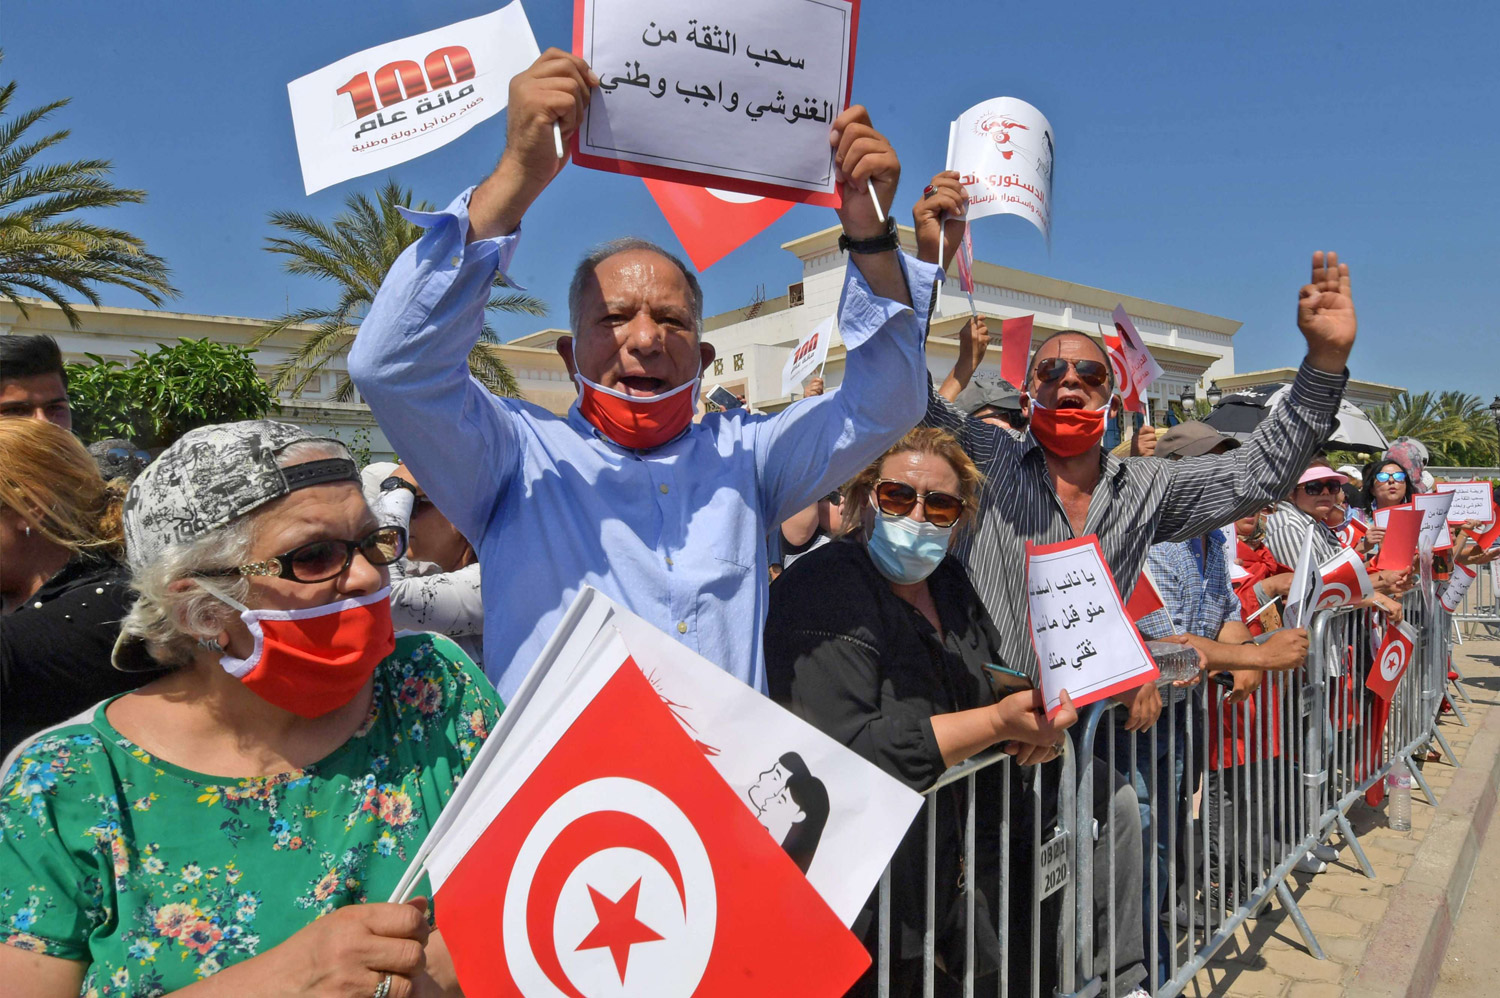 جمع 73 توقيعا في البرلمان كفيل بعزل رئيس حركة النهضة